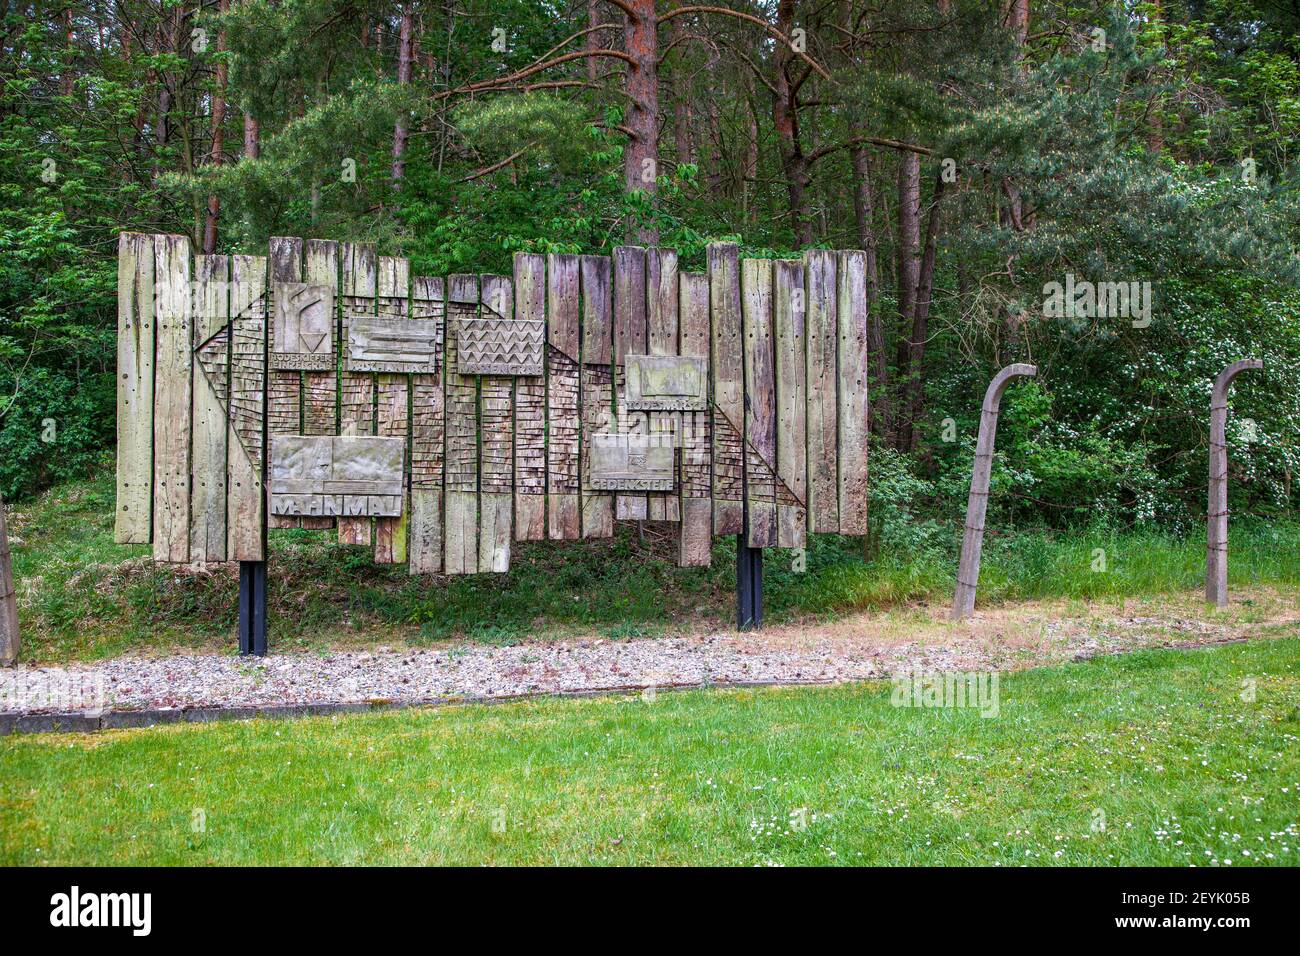 Konzentrationslager Halberstadt Langestein Zwieberge Harz Foto Stock